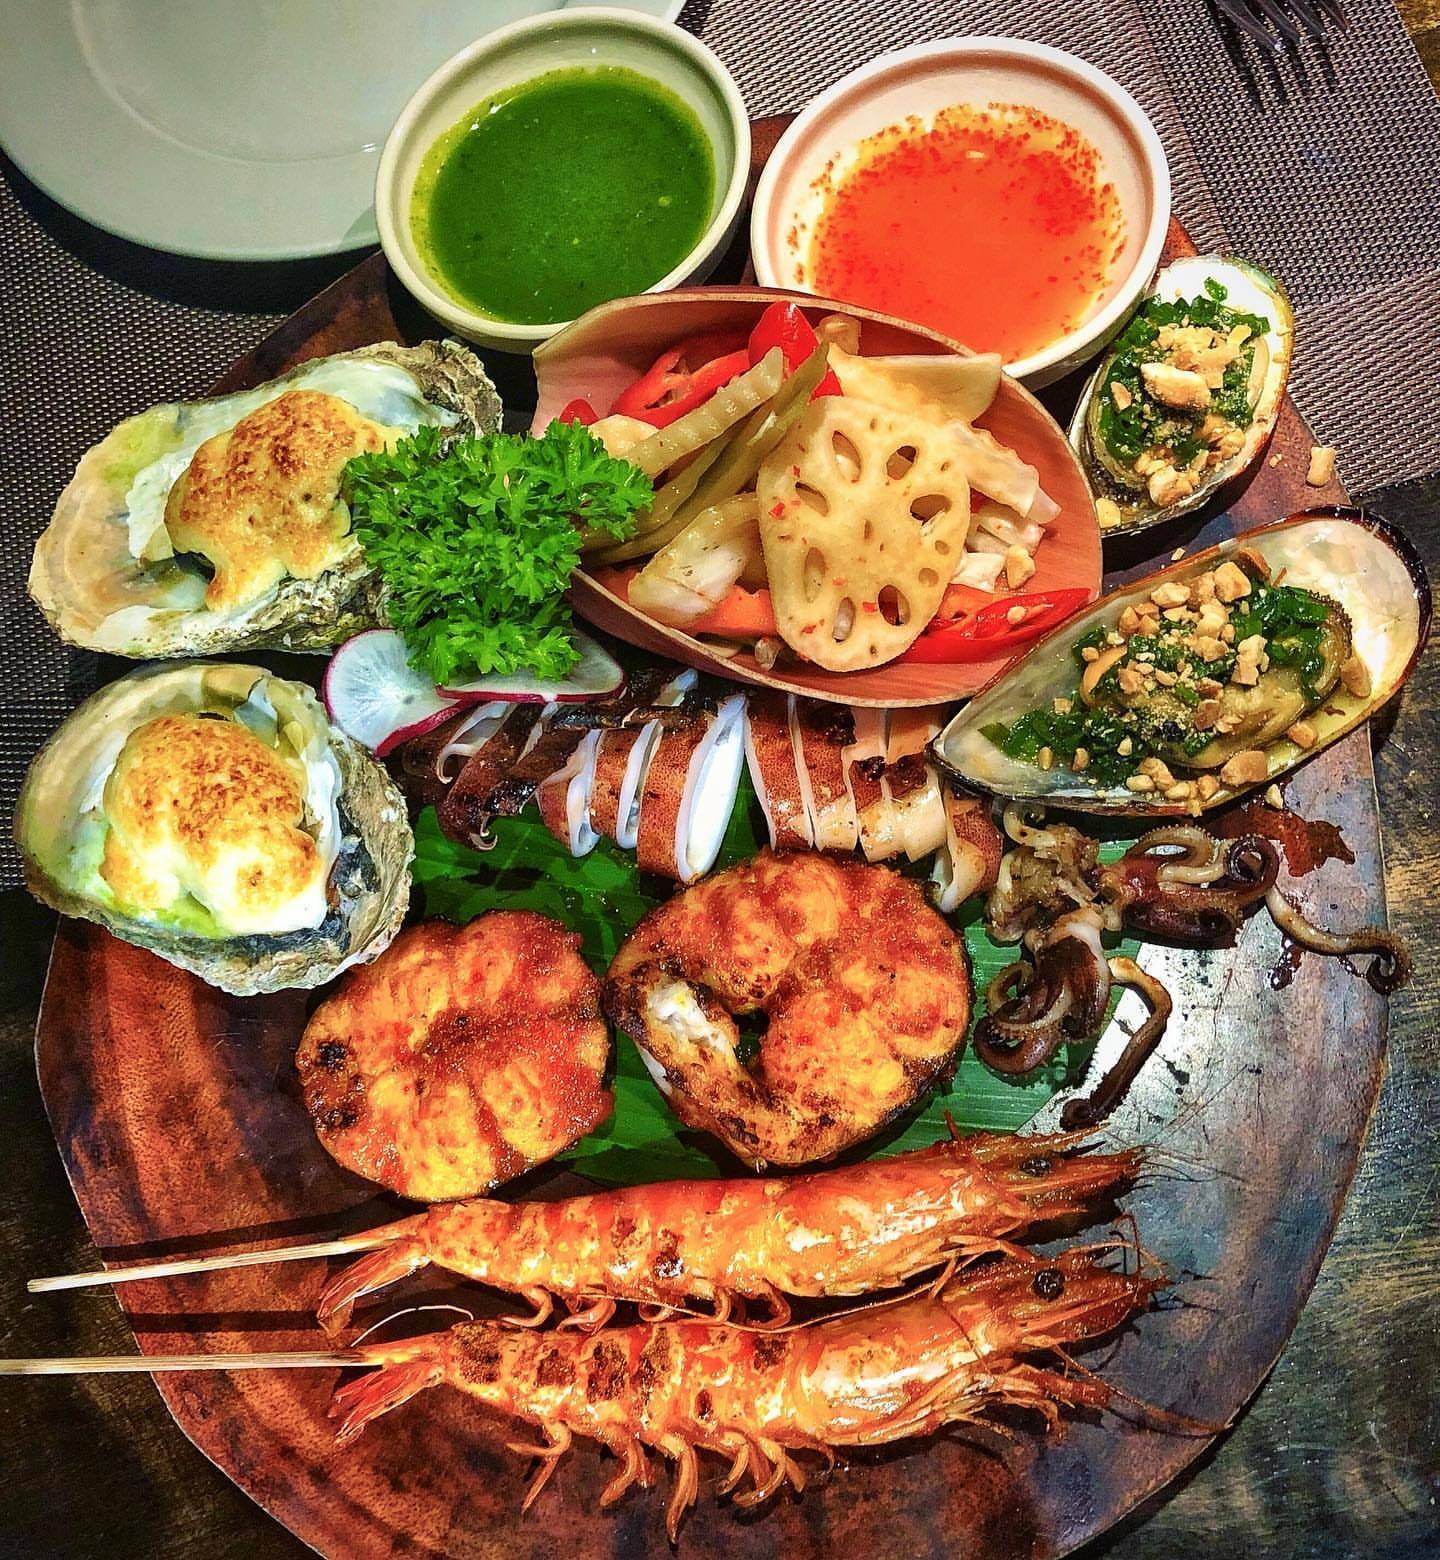 Еда во вьетнаме - вьетнамская кухня, что попробовать, популярные блюда